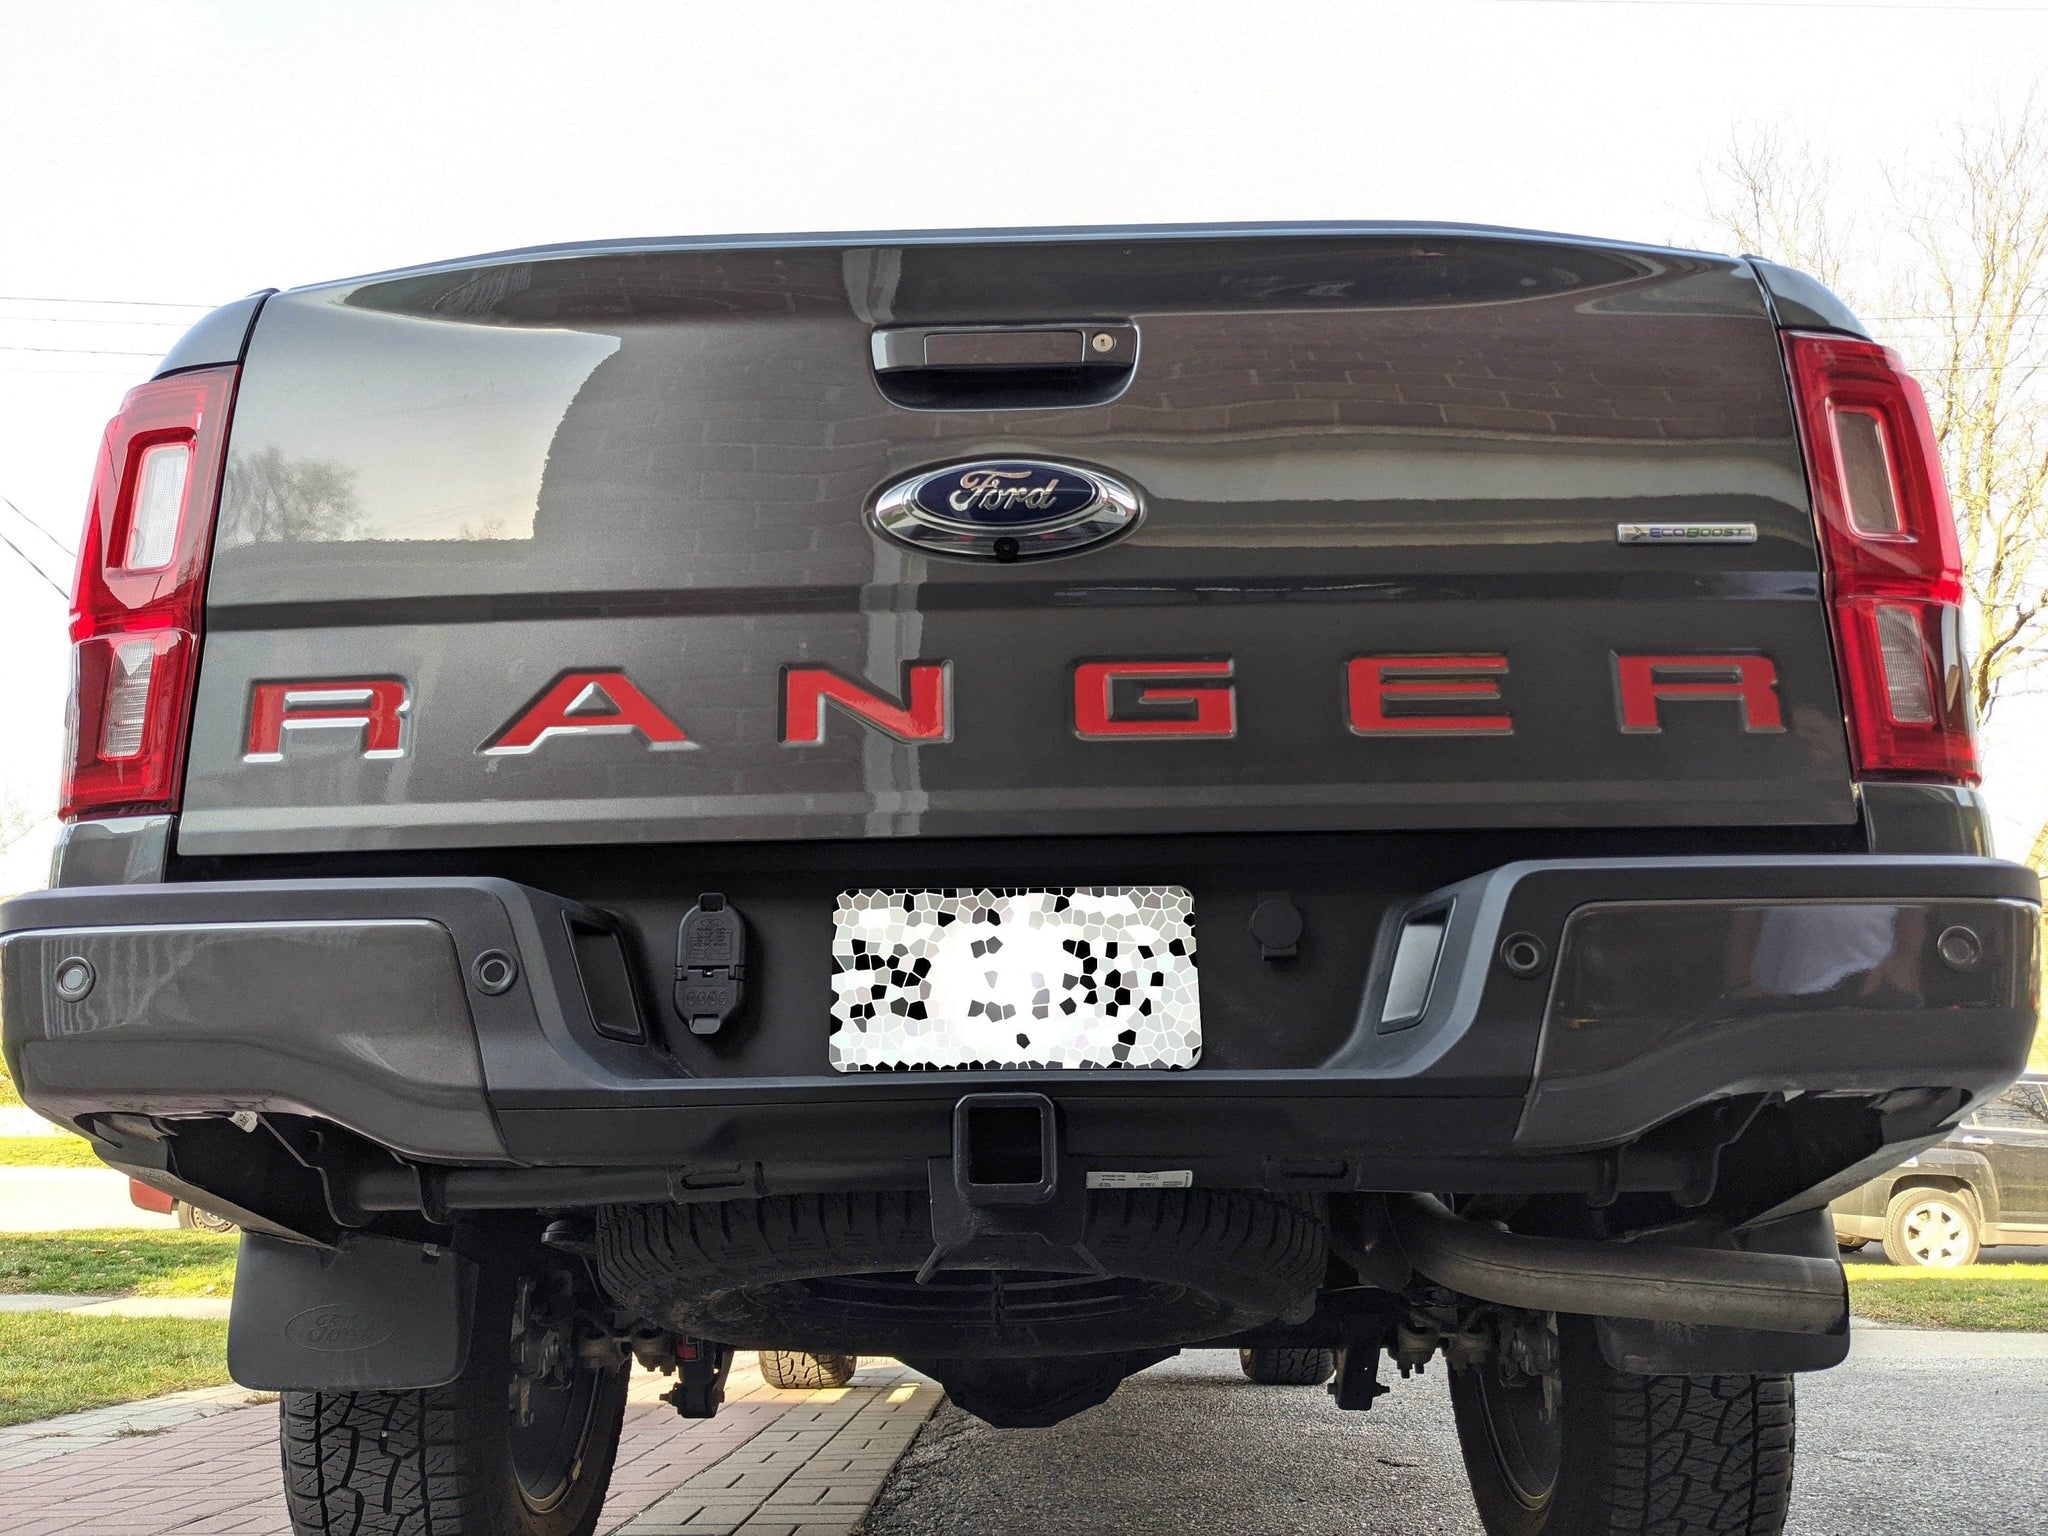 2019+ Ford Ranger - Rear Ranger Emblem VinylMod Overlays